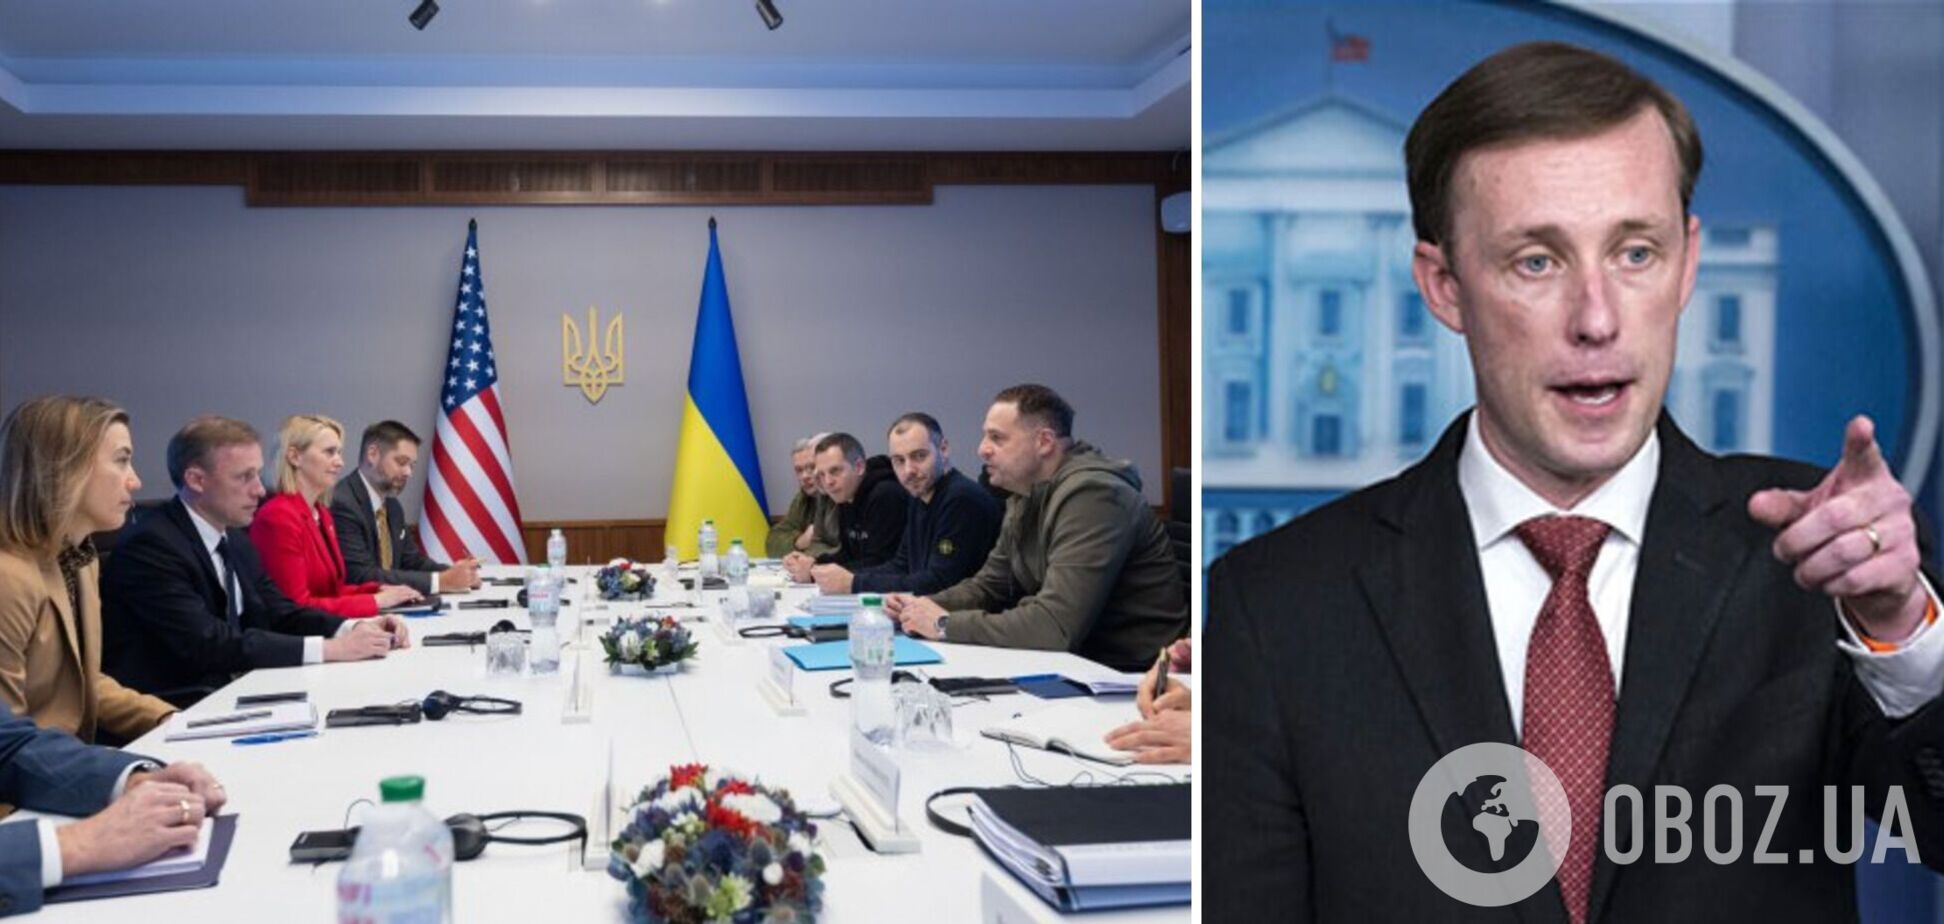 Радник Байдена Салліван відвідав Київ із неоголошеним візитом, щоб обговорити використання Росією іранської зброї. Відео